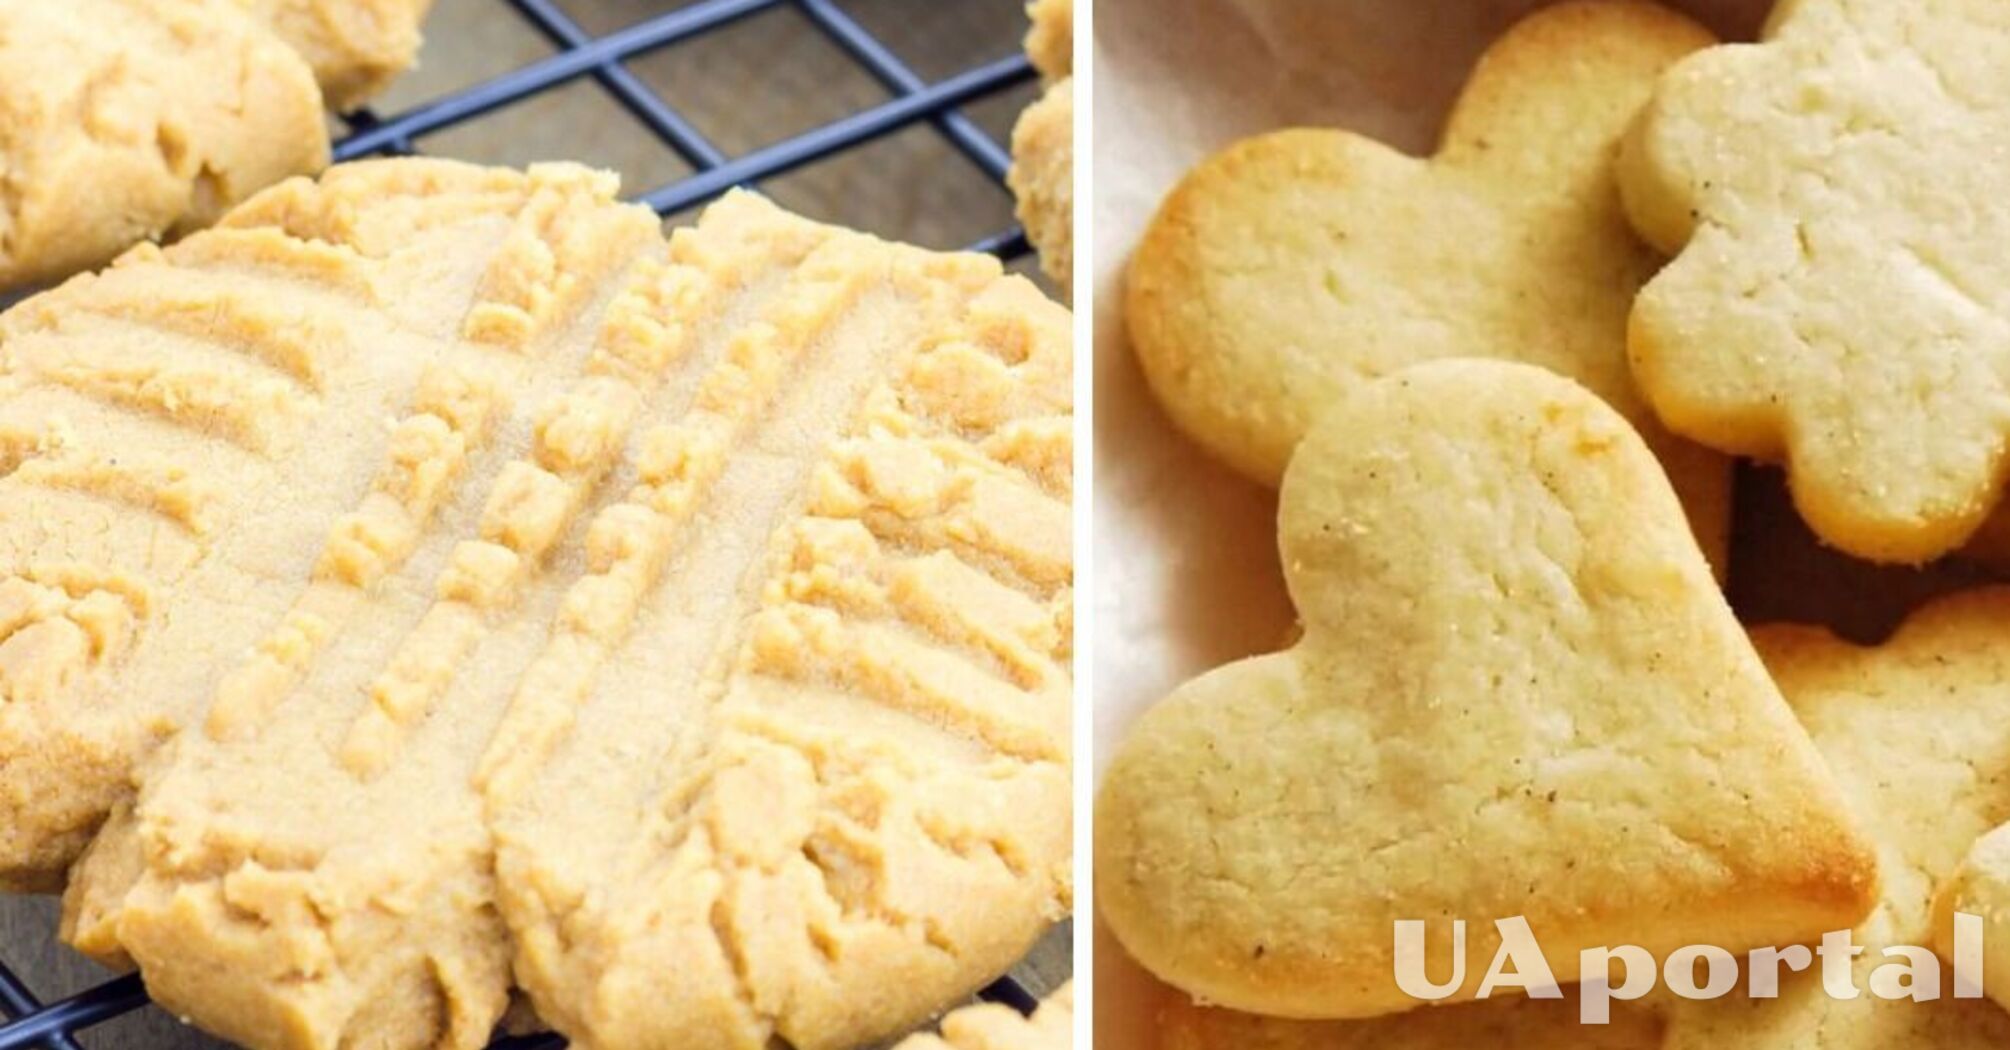 Тане у роті: як приготувати найніжніше печиво з доступних та бюджетних продуктів